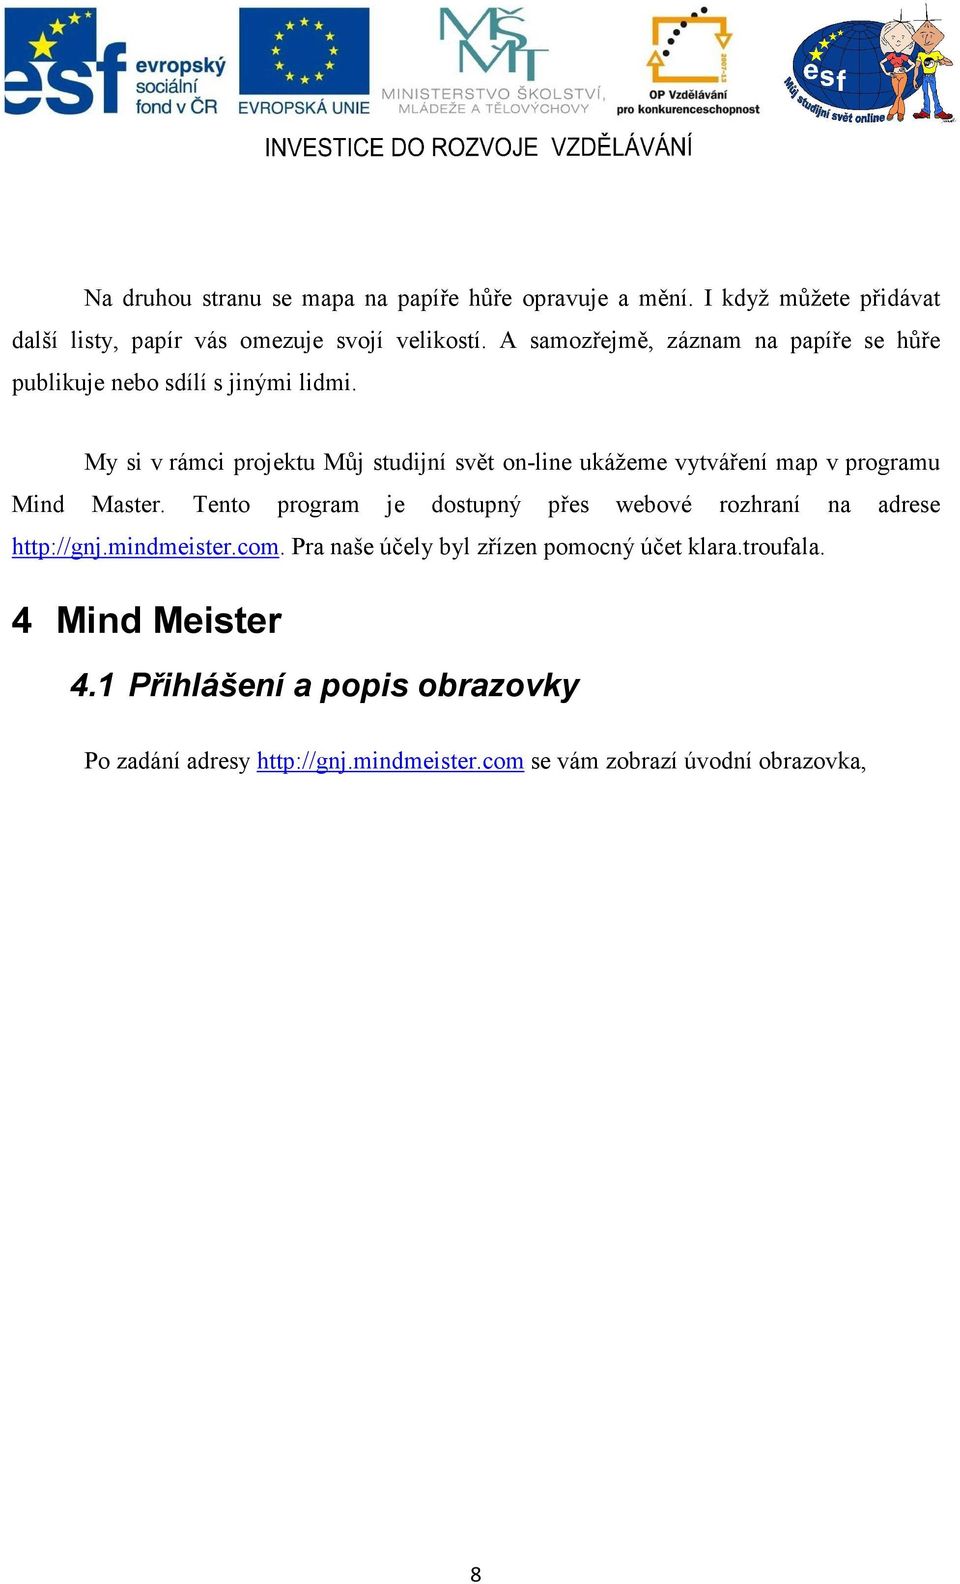 My si v rámci projektu Můj studijní svět on-line ukážeme vytváření map v programu Mind Master.